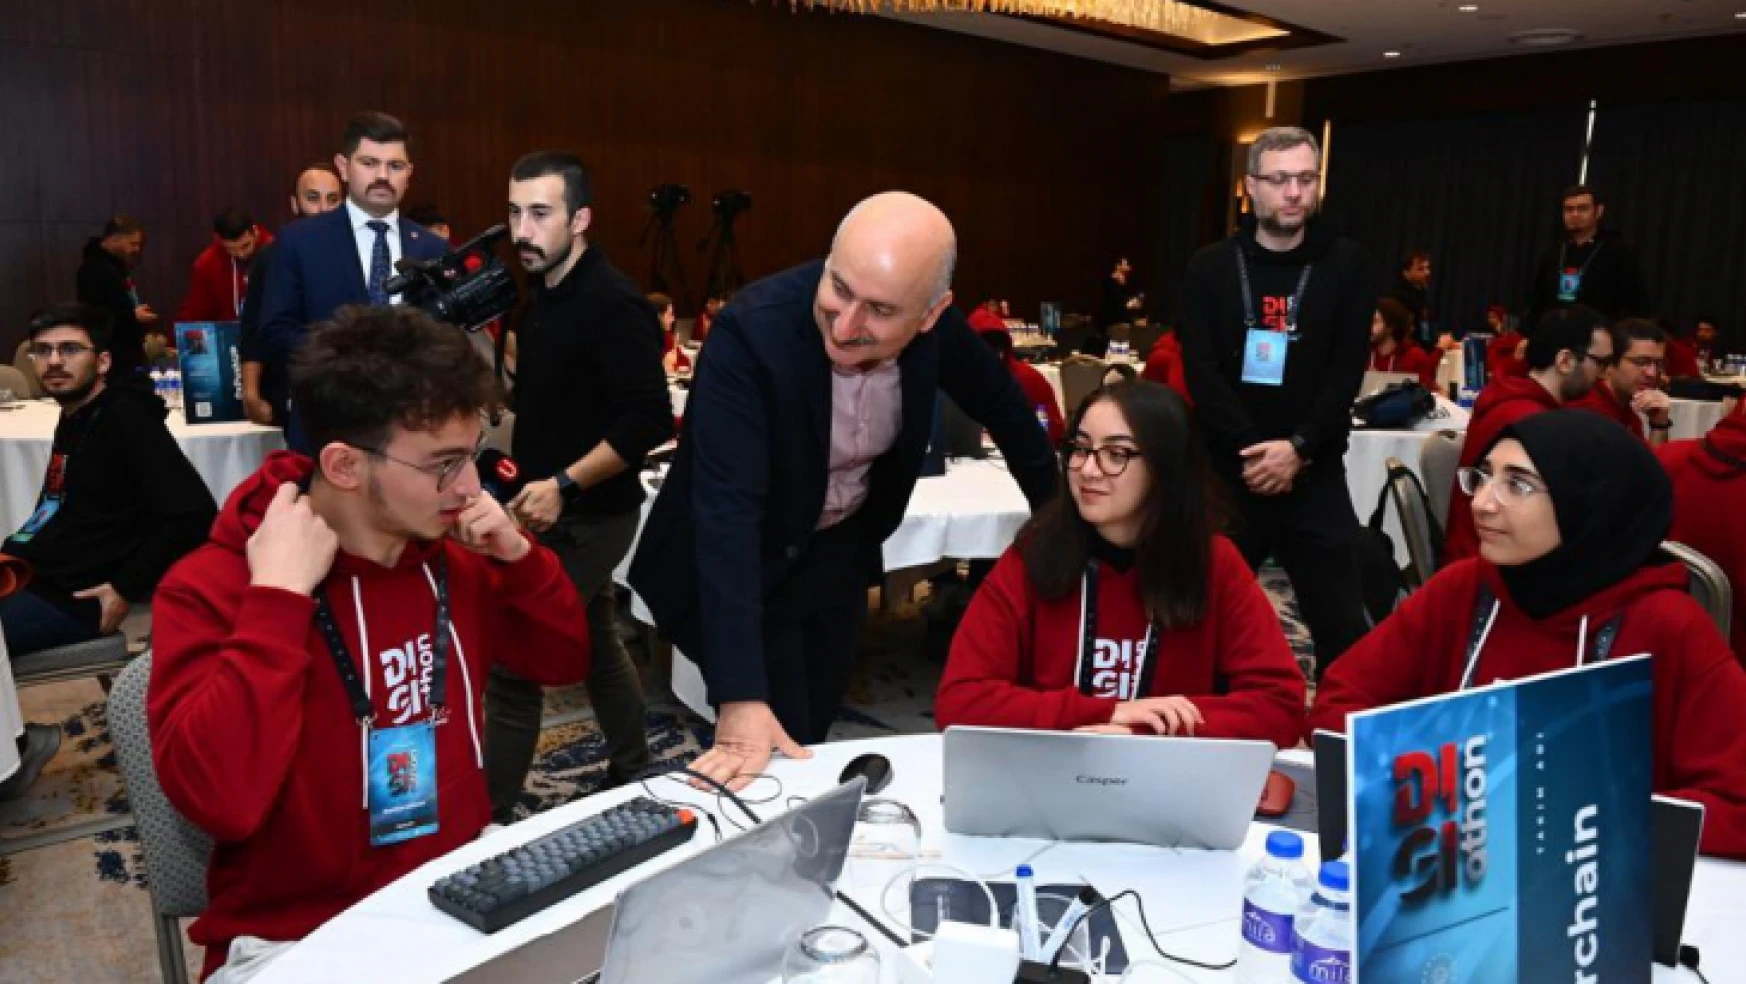 Ulaştırma ve Altyapı Bakanı Adil Karaismailoğlu, 'Digiathon 2022 Yarışması' programına katıldı